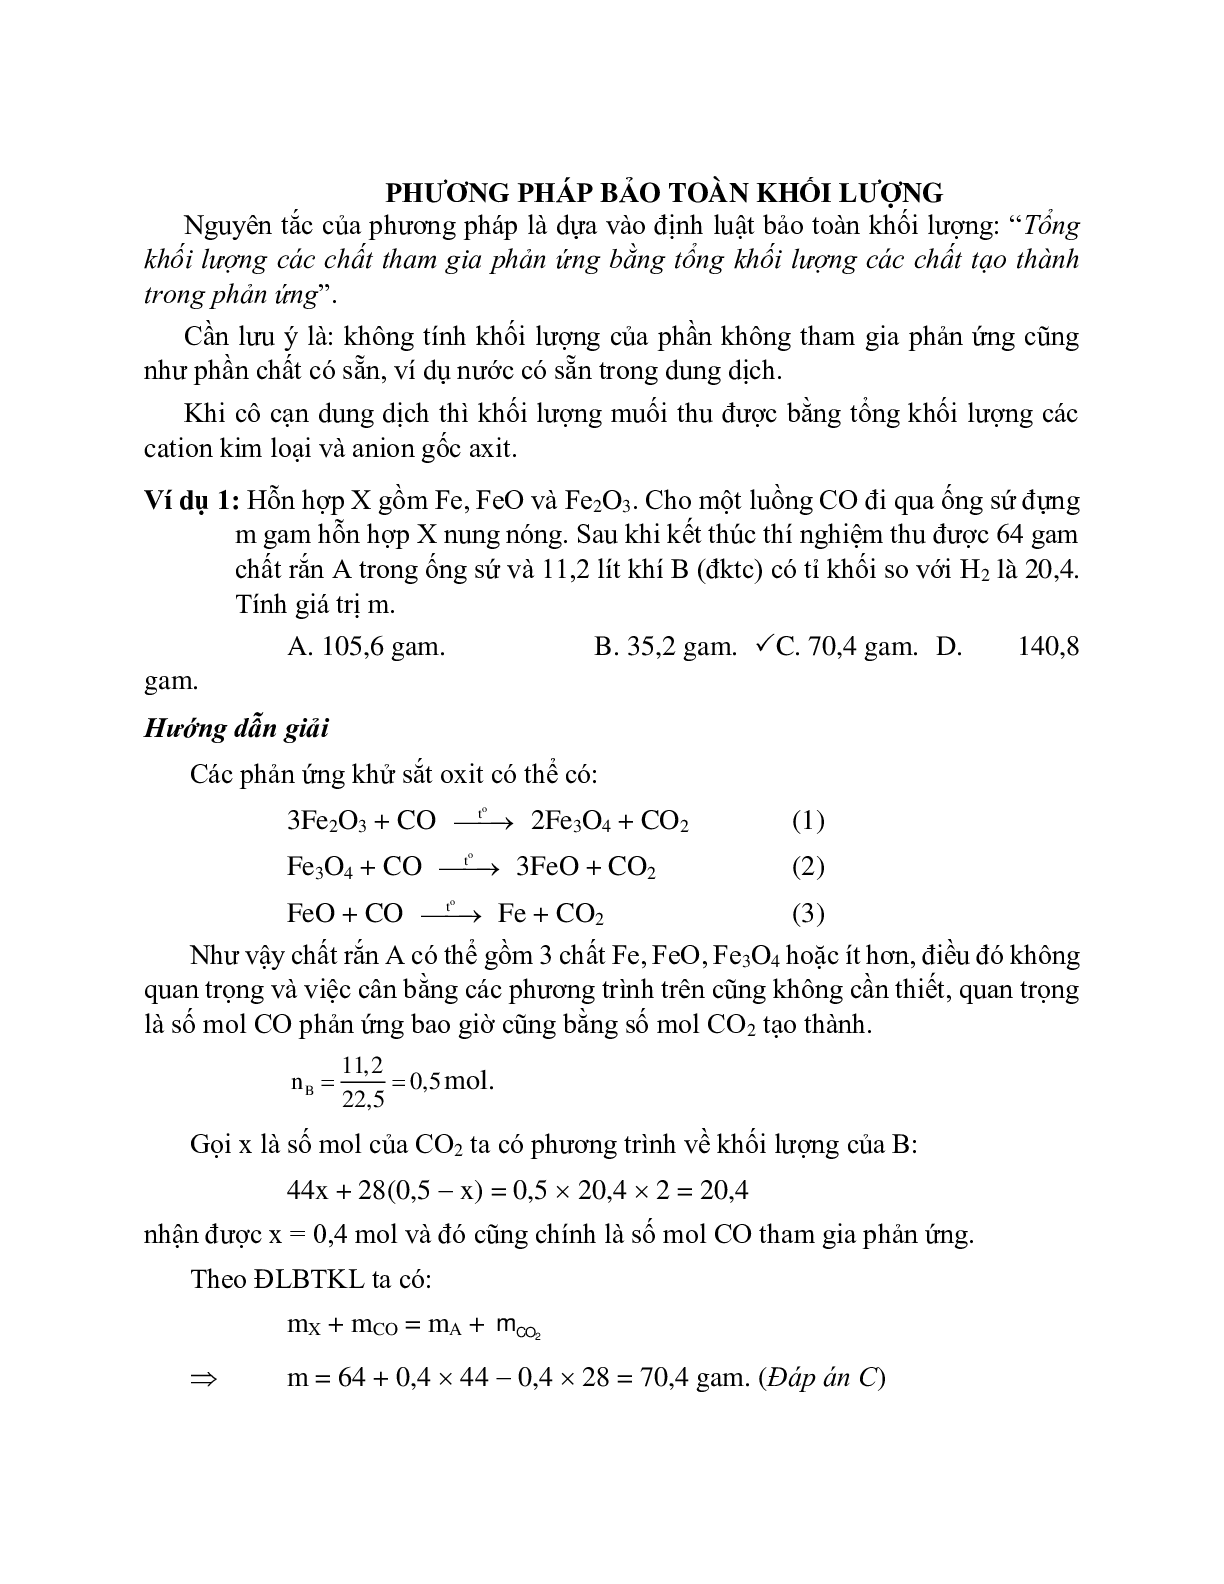 Lý thuyết, bài tập về phương pháp bảo toàn khối lượng có đáp án, chọn lọc (trang 1)